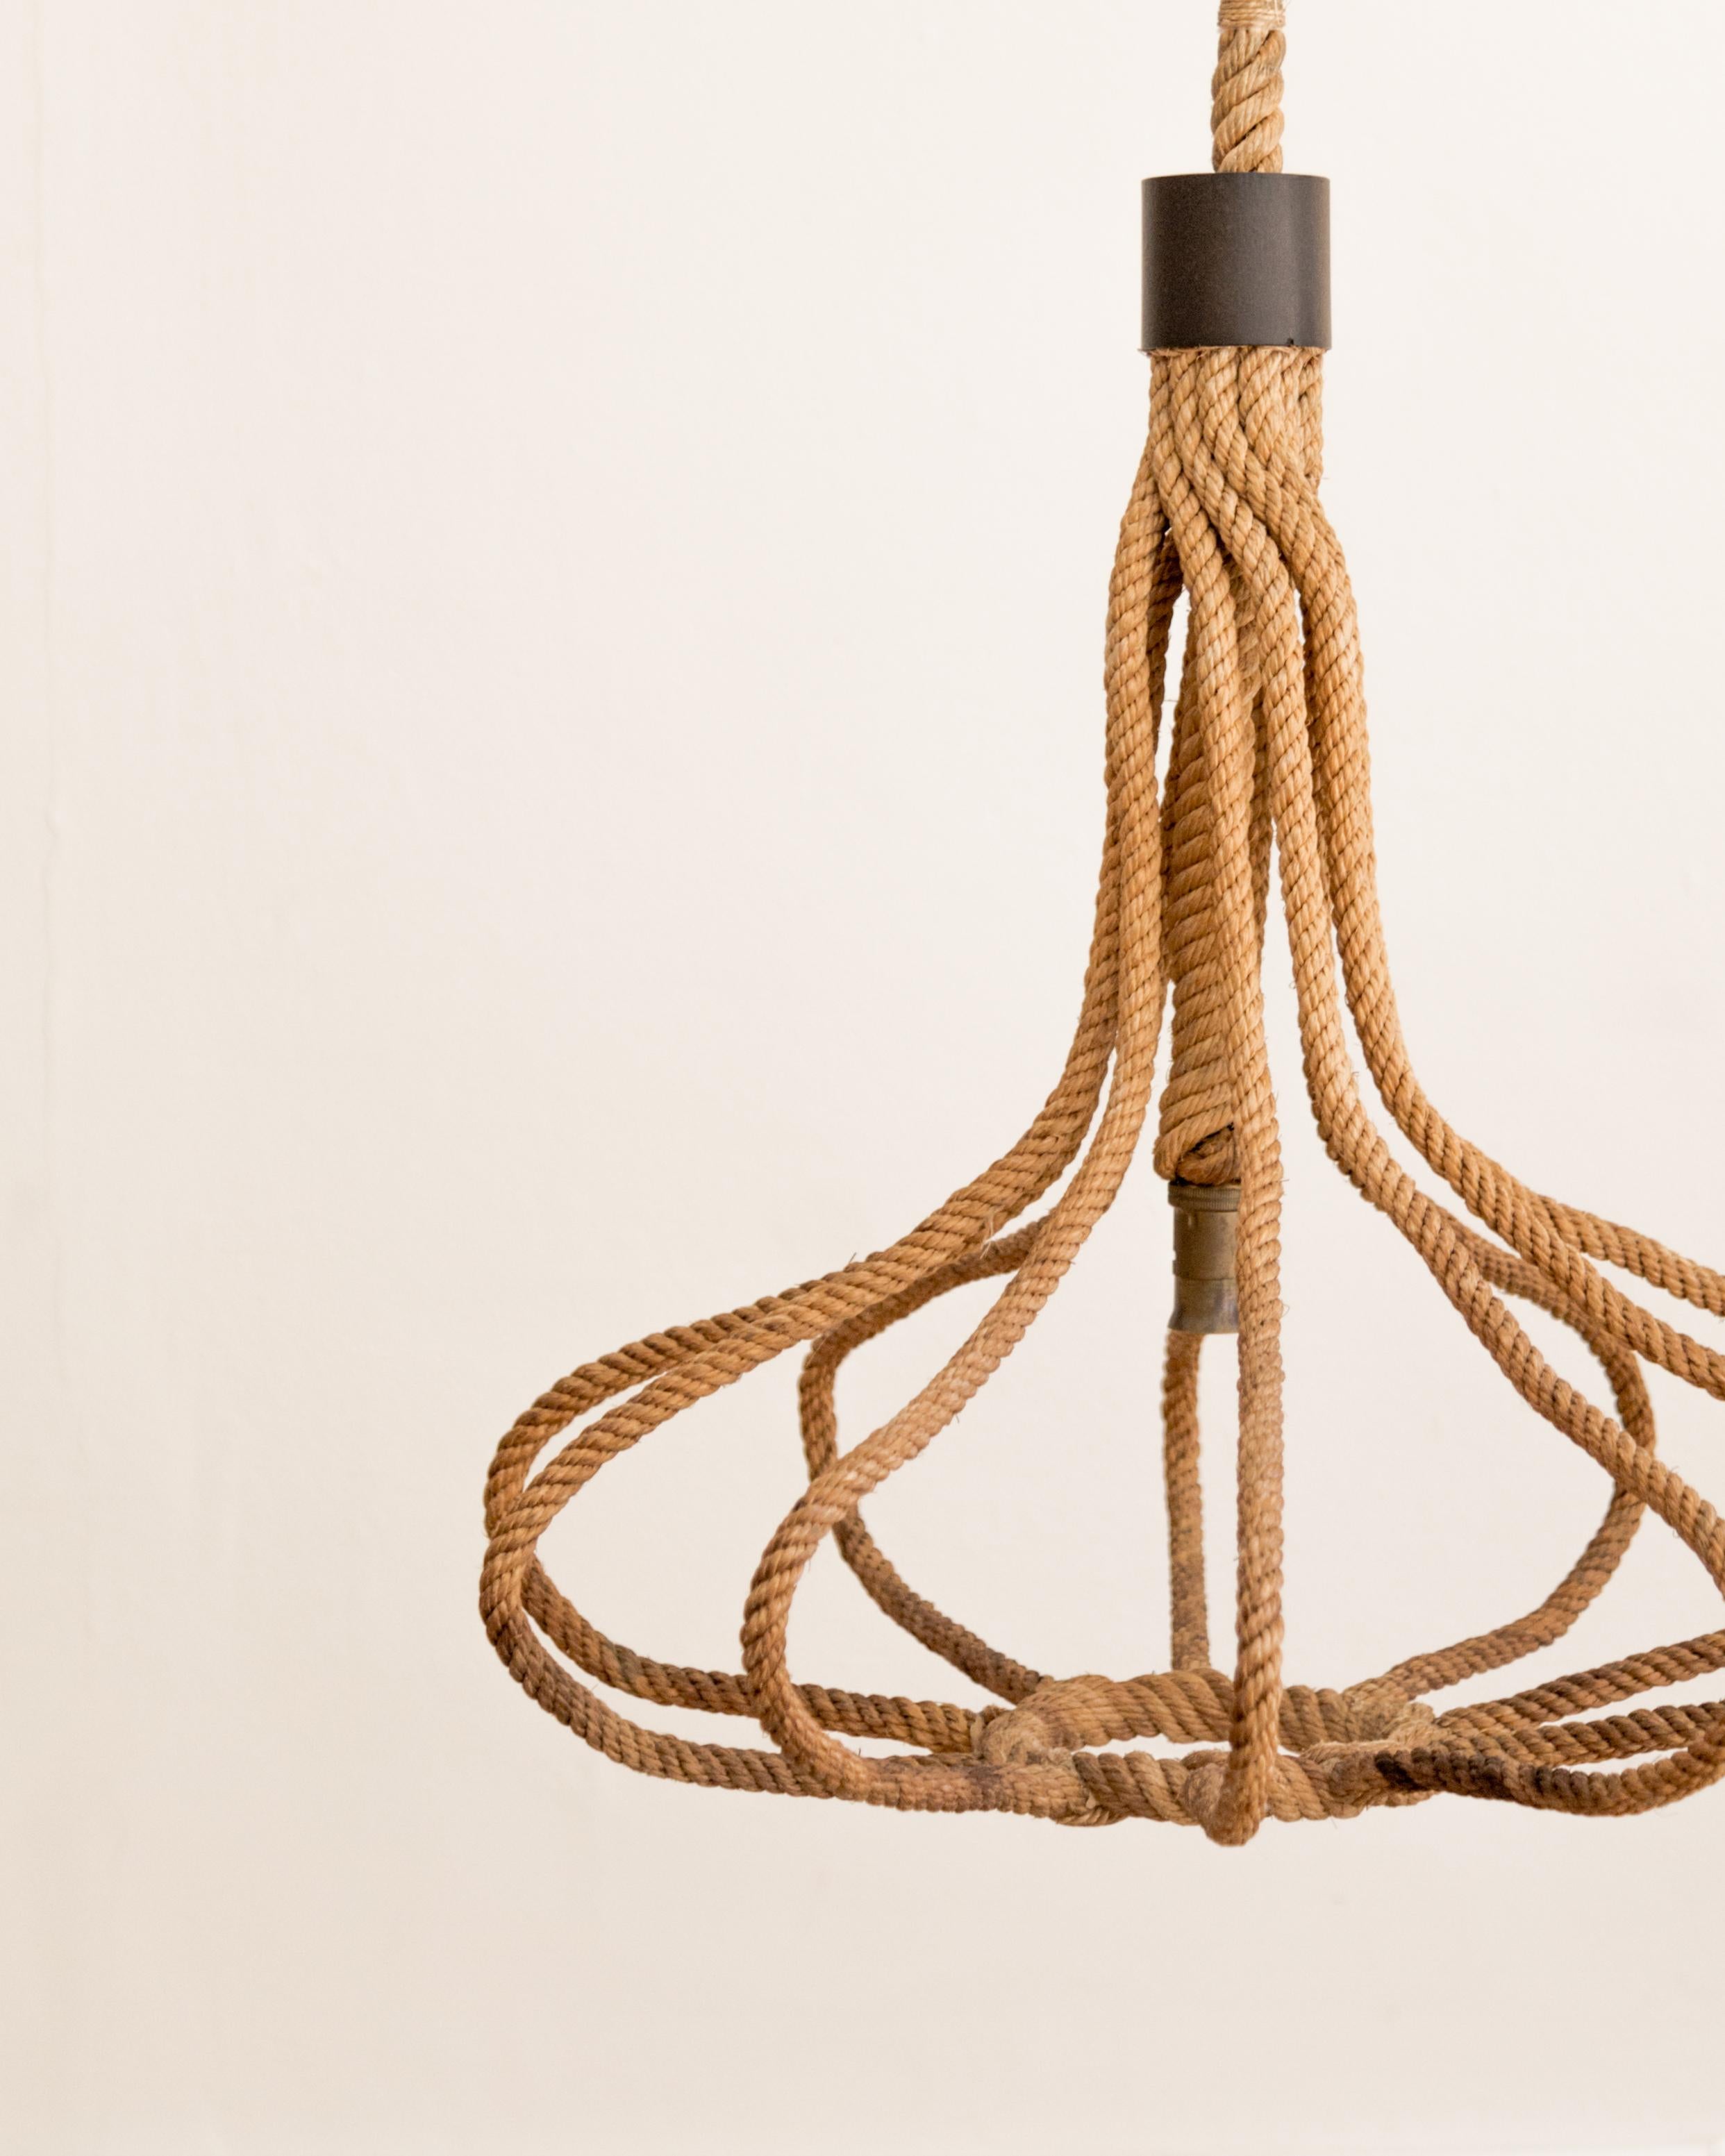 Suspension sculpturale française en corde par Audoux Minet.